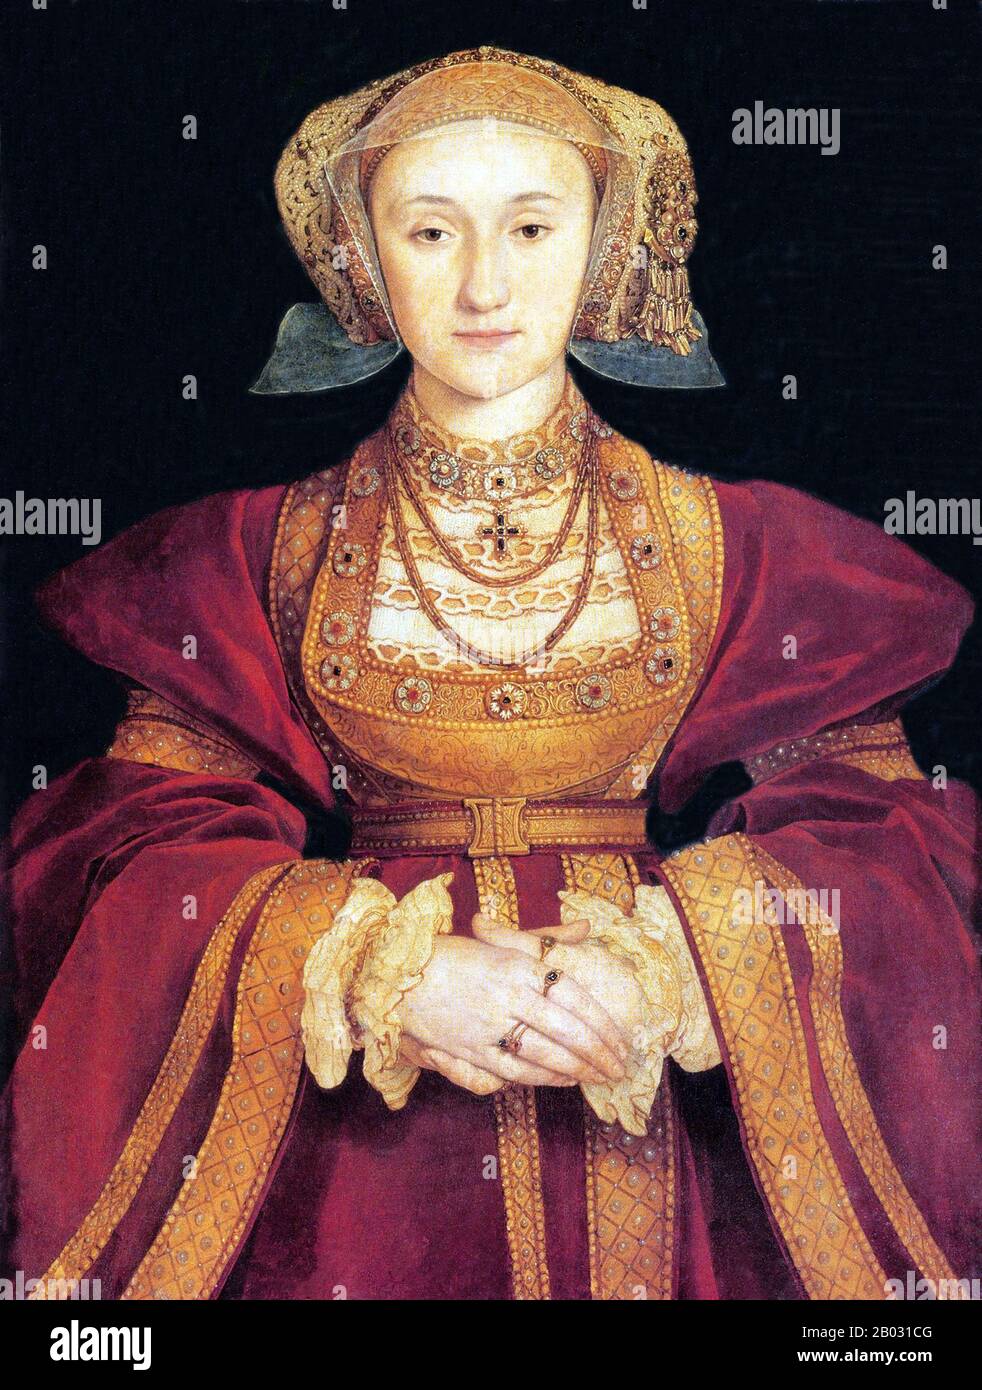 Anna di Cleves (in tedesco Anna; 22 settembre 1515 – 16 luglio 1557) fu Regina d'Inghilterra dal 6 gennaio 1540 al 9 luglio 1540 come quarta moglie del re Enrico VIII Il matrimonio non è mai stato dichiarato consumato e, di conseguenza, non è stata incoronata regina consorte. Dopo l'annullamento del loro matrimonio, Anna fu data al re una generosa soluzione, e successivamente chiamata sorella Amata del re. Visse per vedere l'incoronazione della Regina Maria i, superando il resto delle mogli di Enrico. Foto Stock